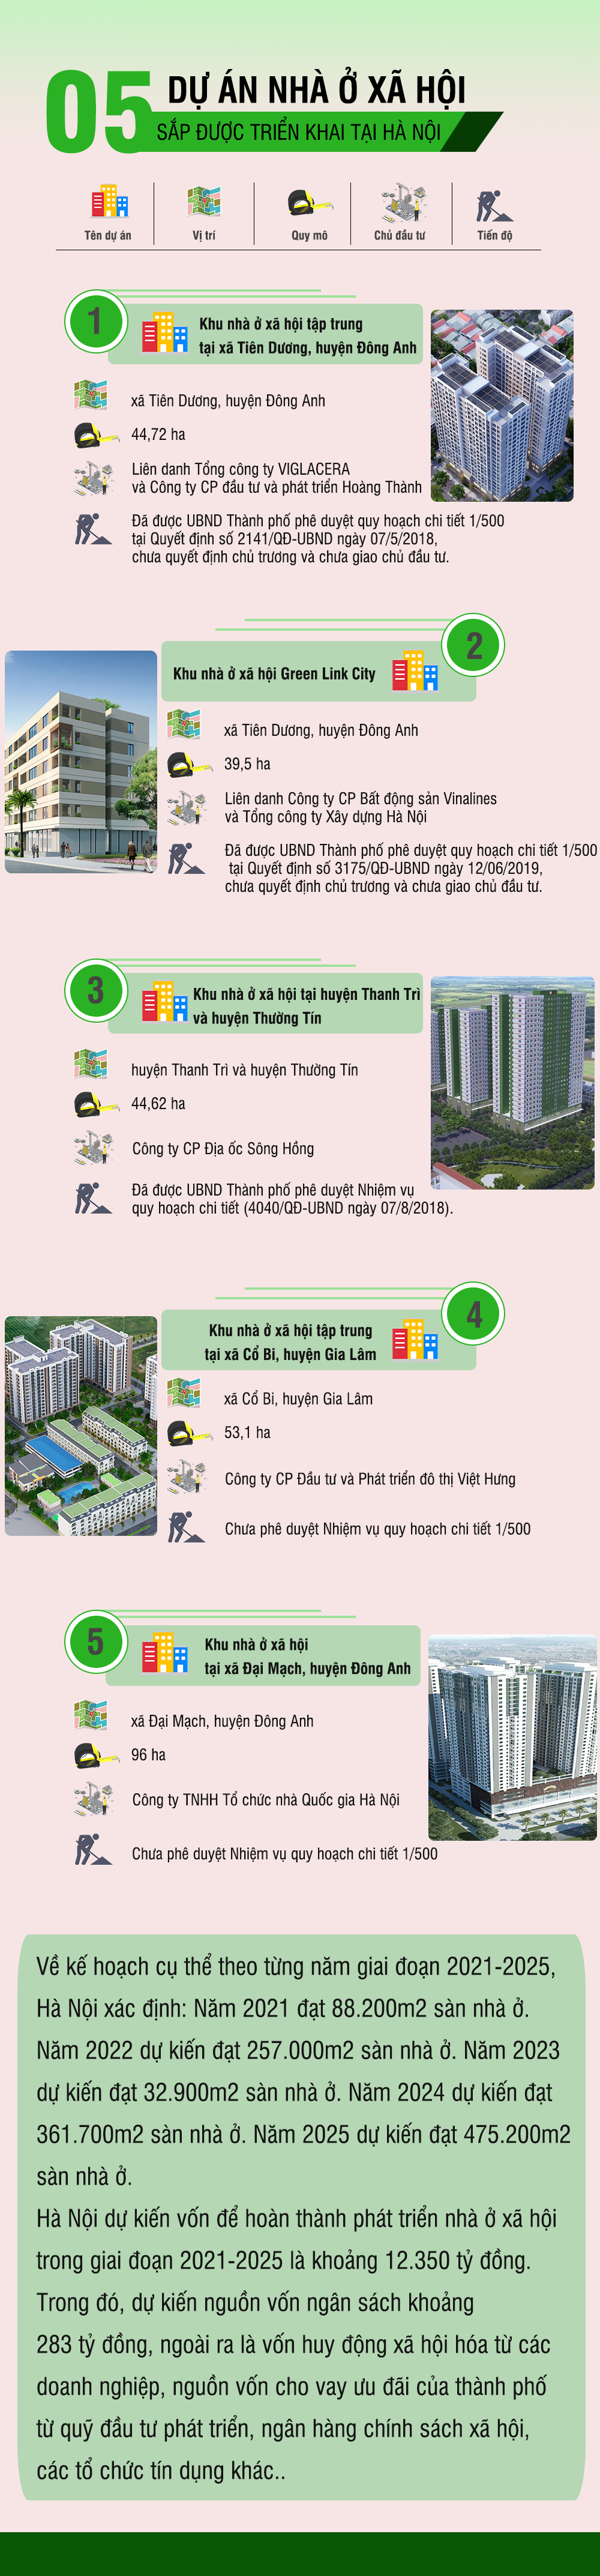 [Infographic] Chi tiết 05 dự án nhà ở xã hội sắp được triển khai tại Hà Nội - Ảnh 1